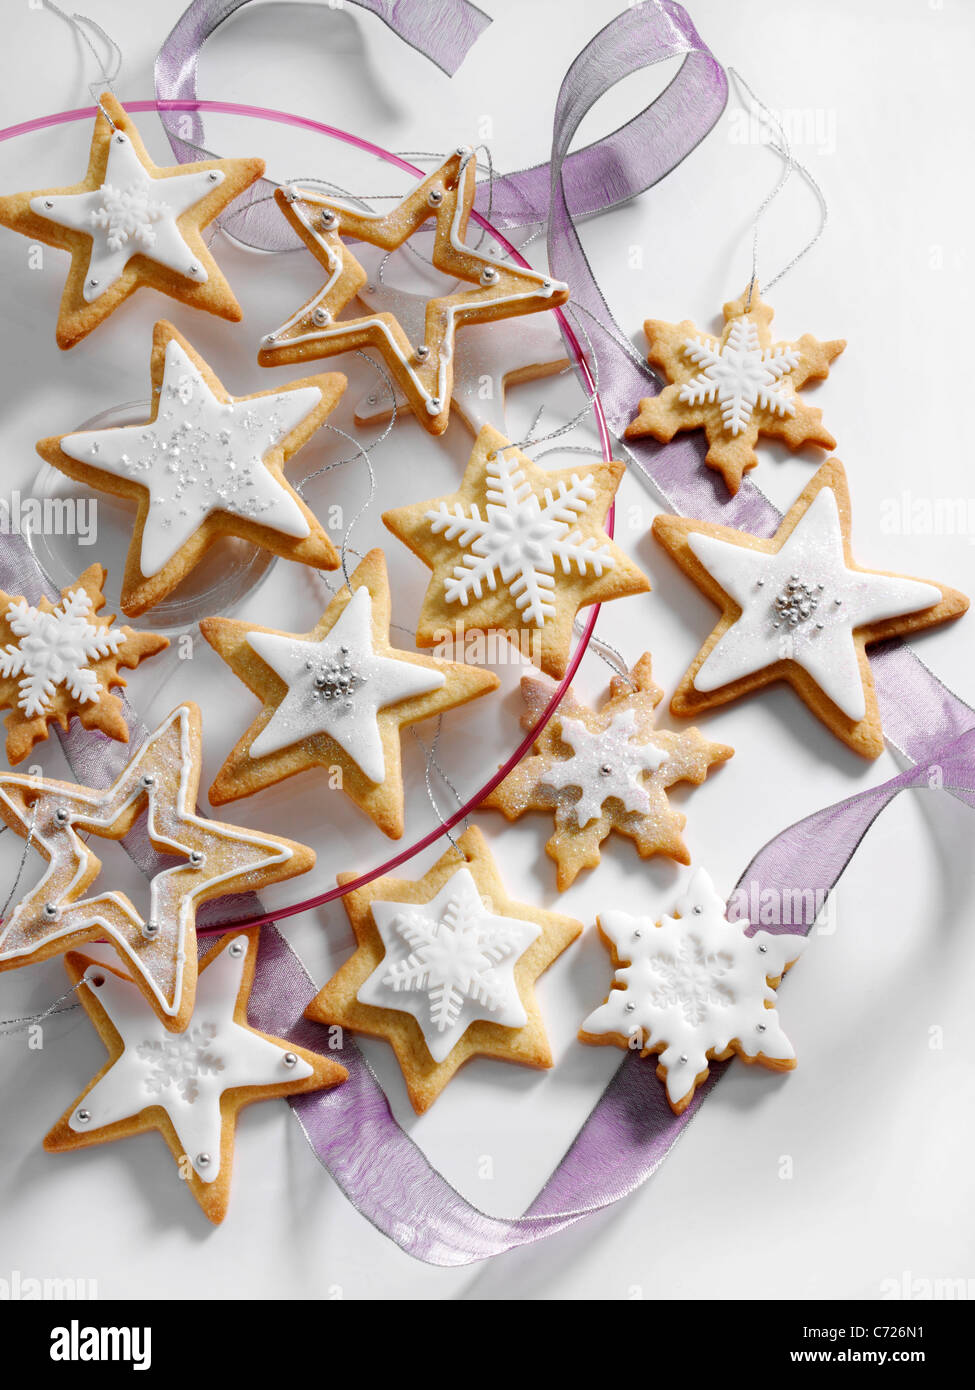 Biscuits de Noël glacé en forme d'étoile Banque D'Images